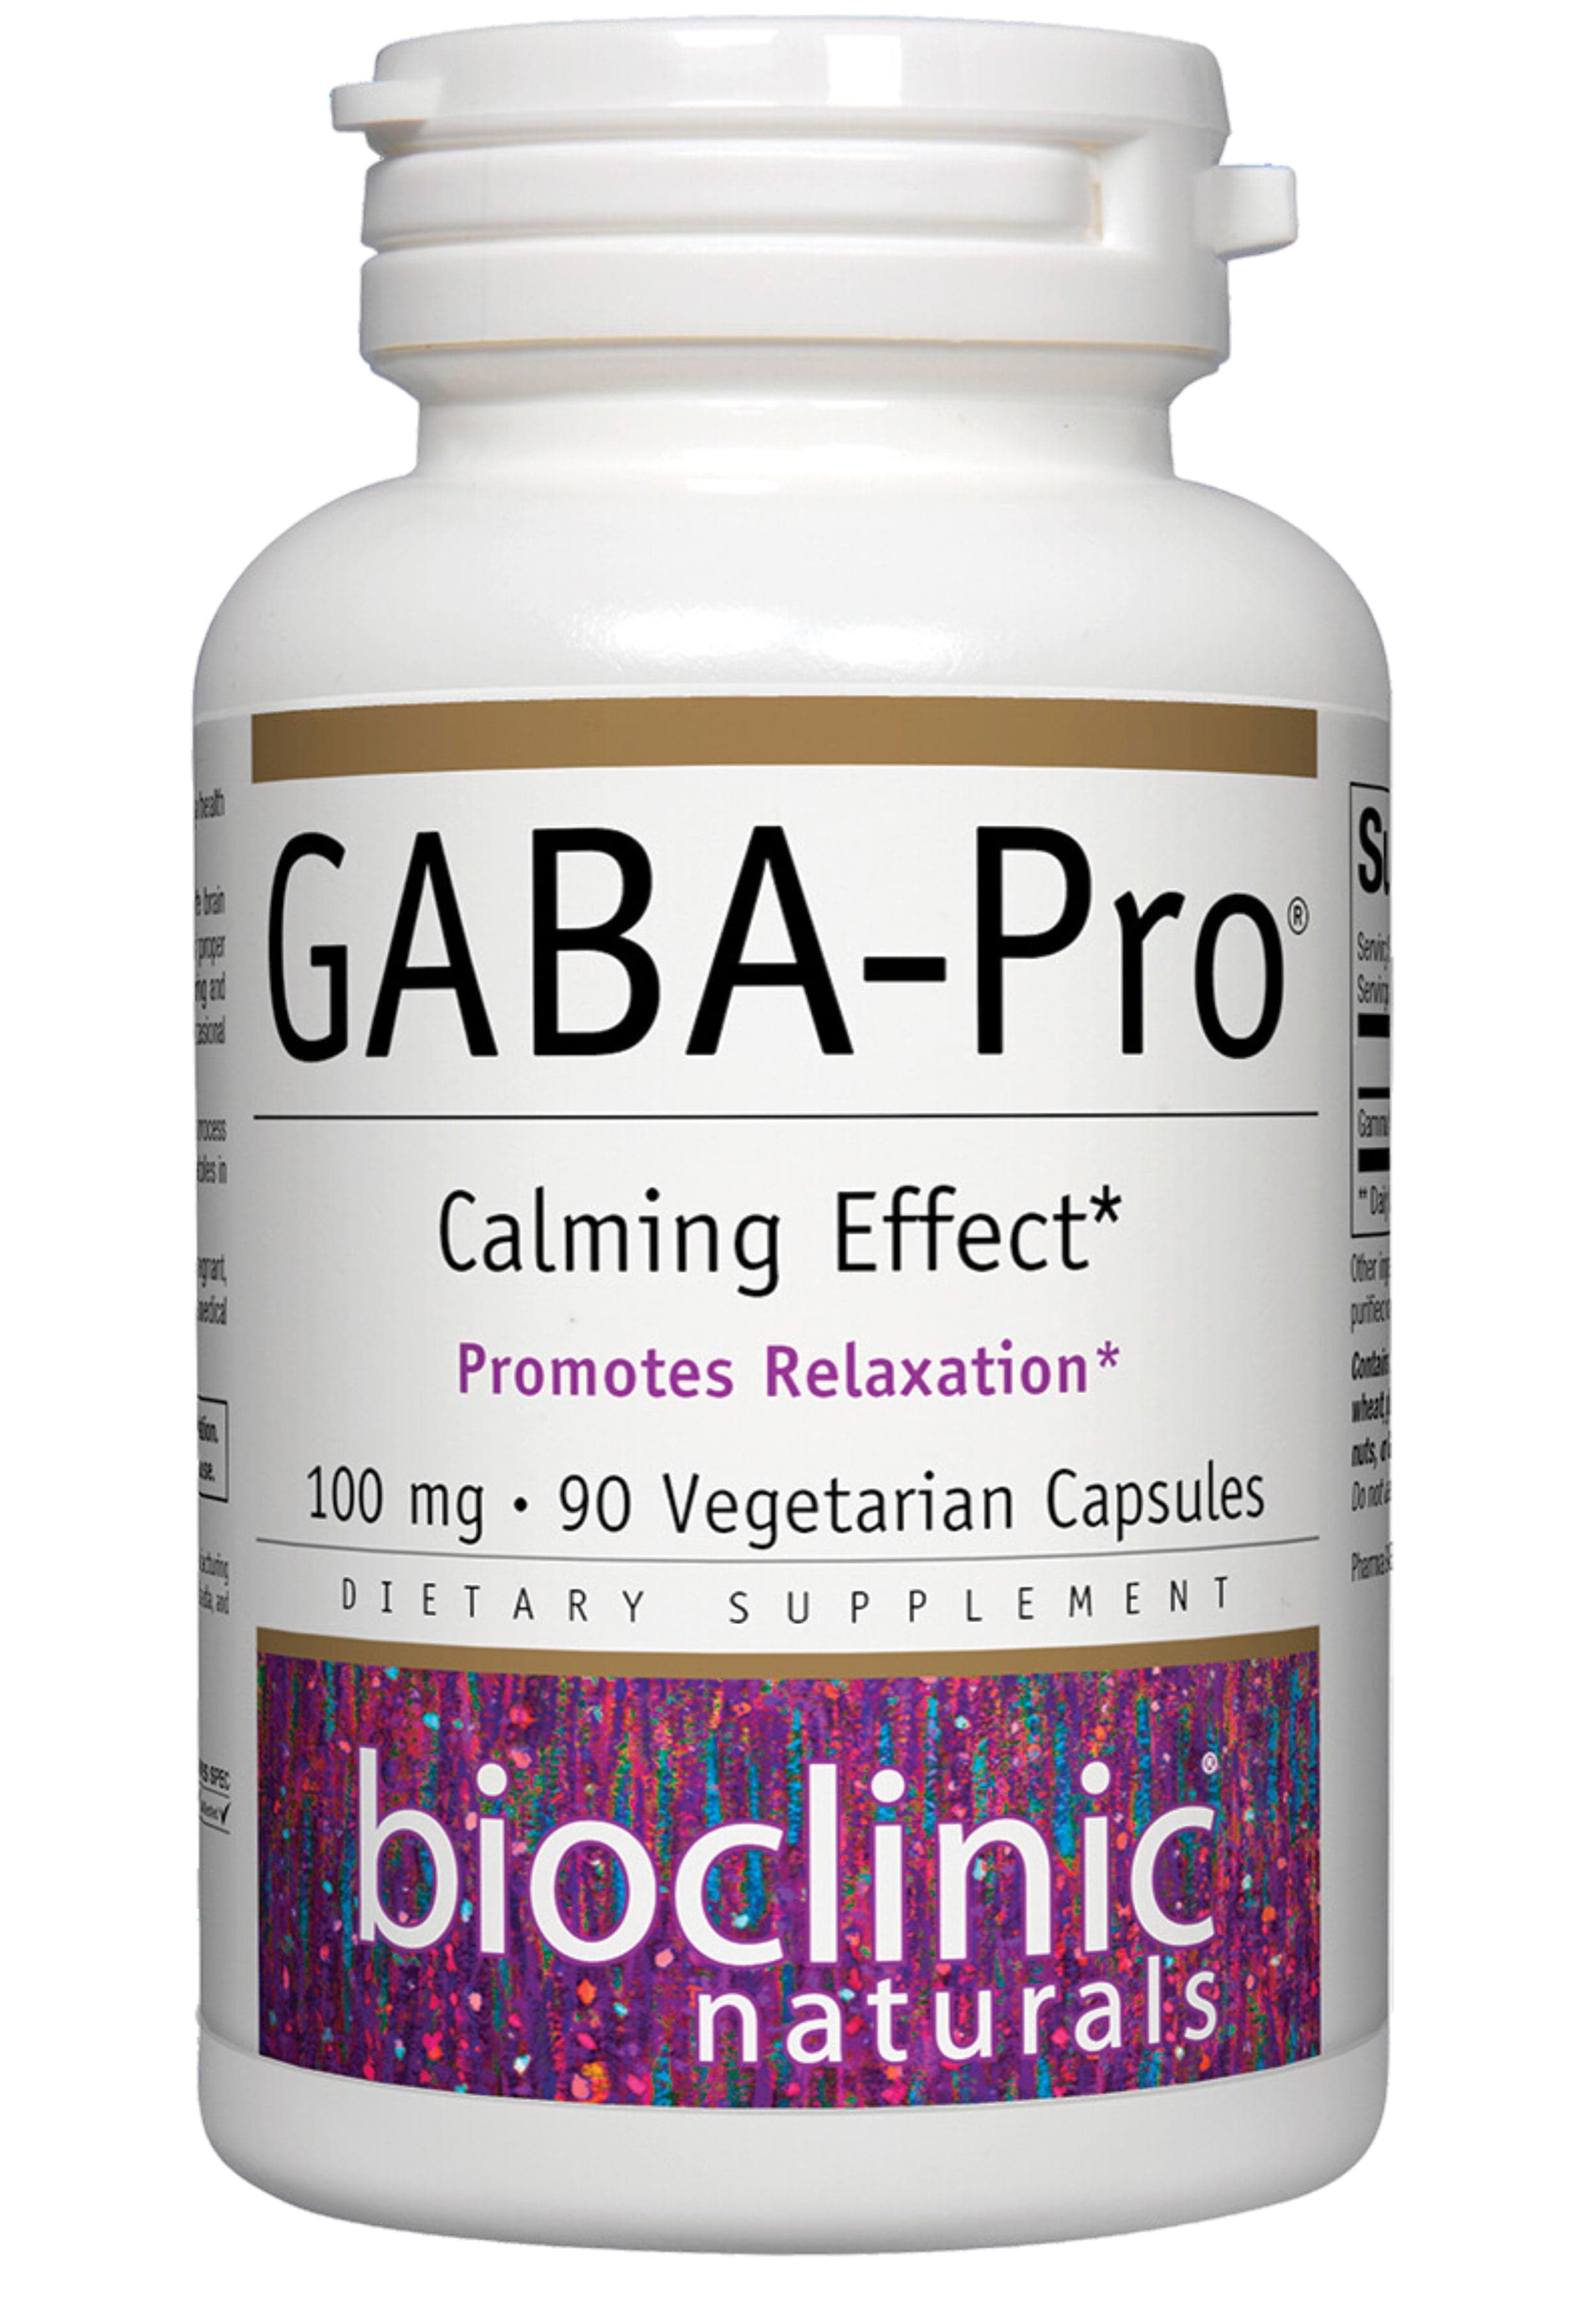 Bioclinic Naturals GABA-Pro Calming Effect